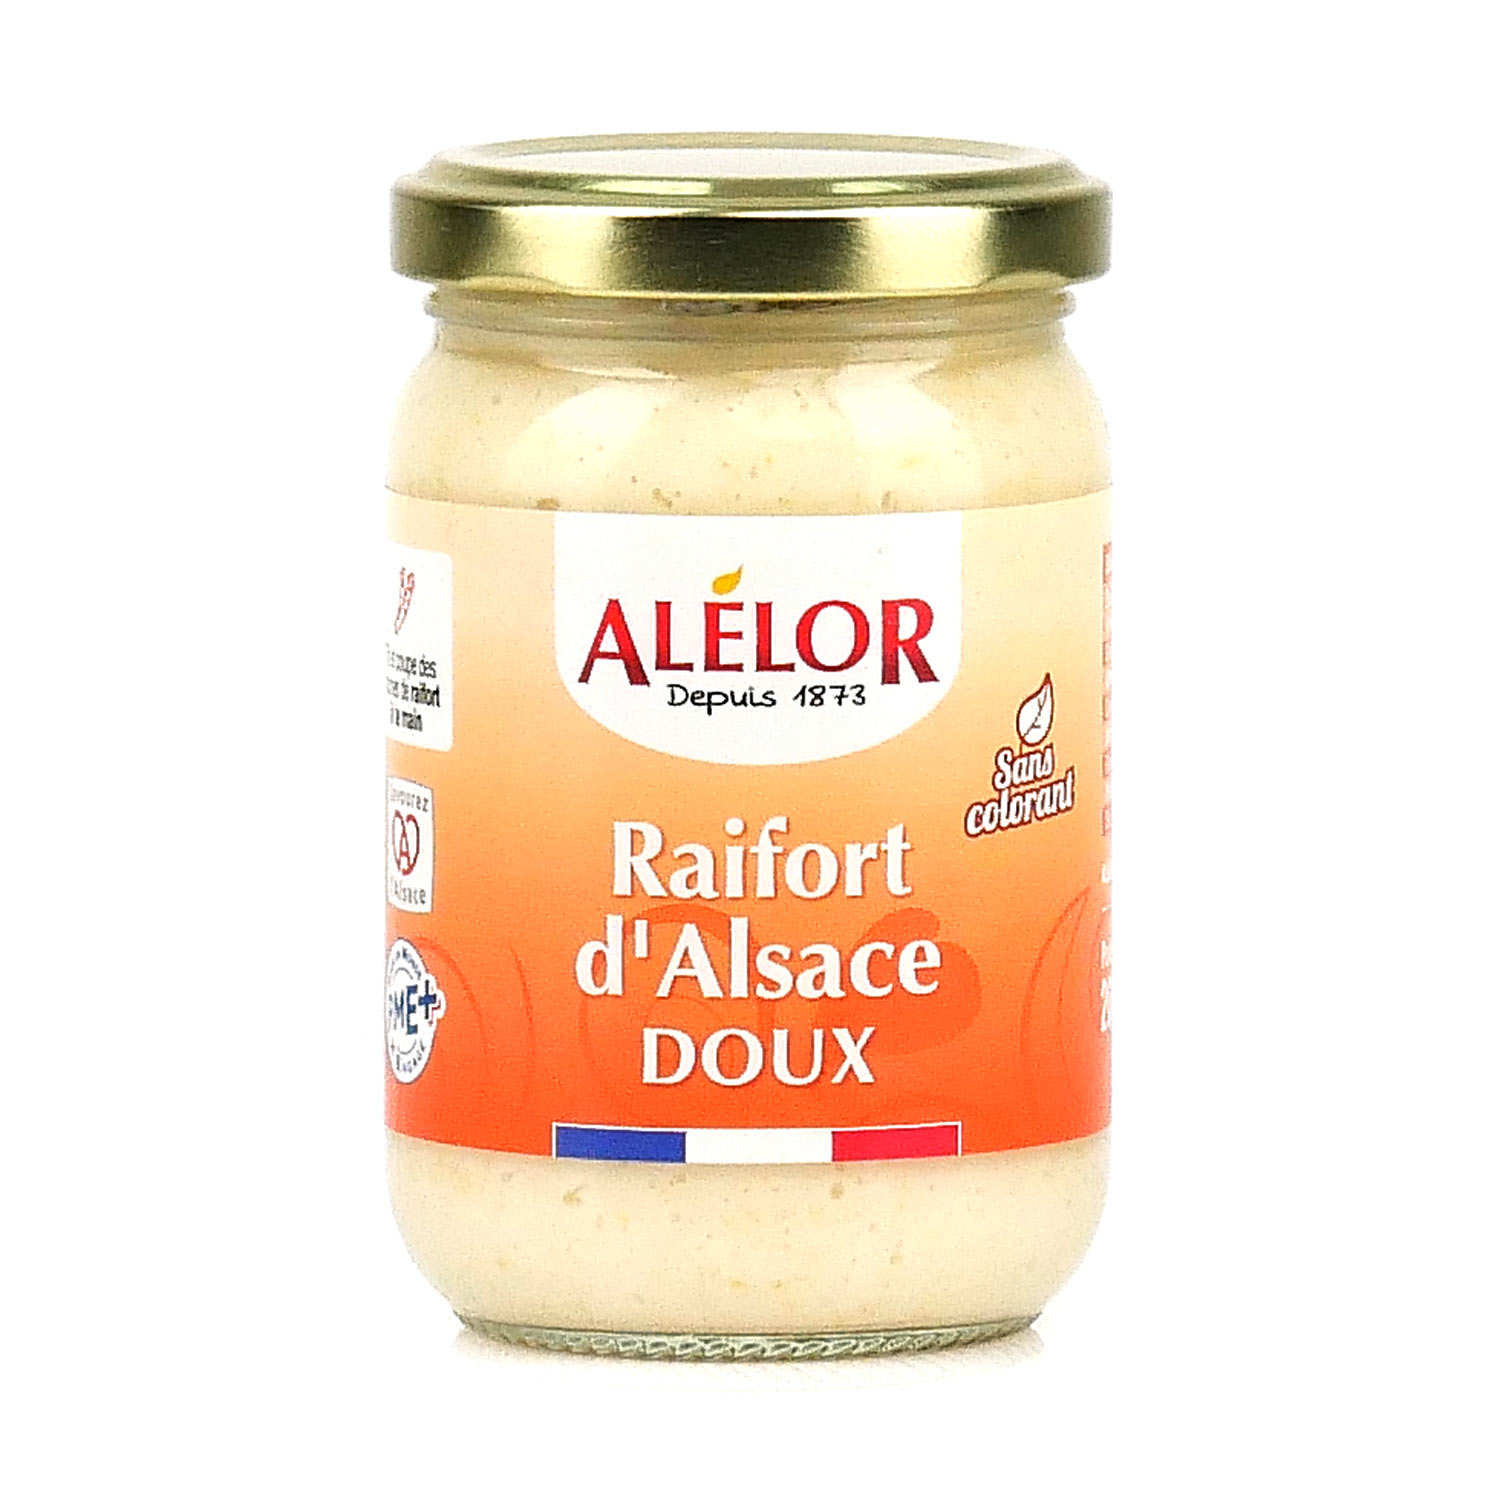 Raifort d'Alsace doux